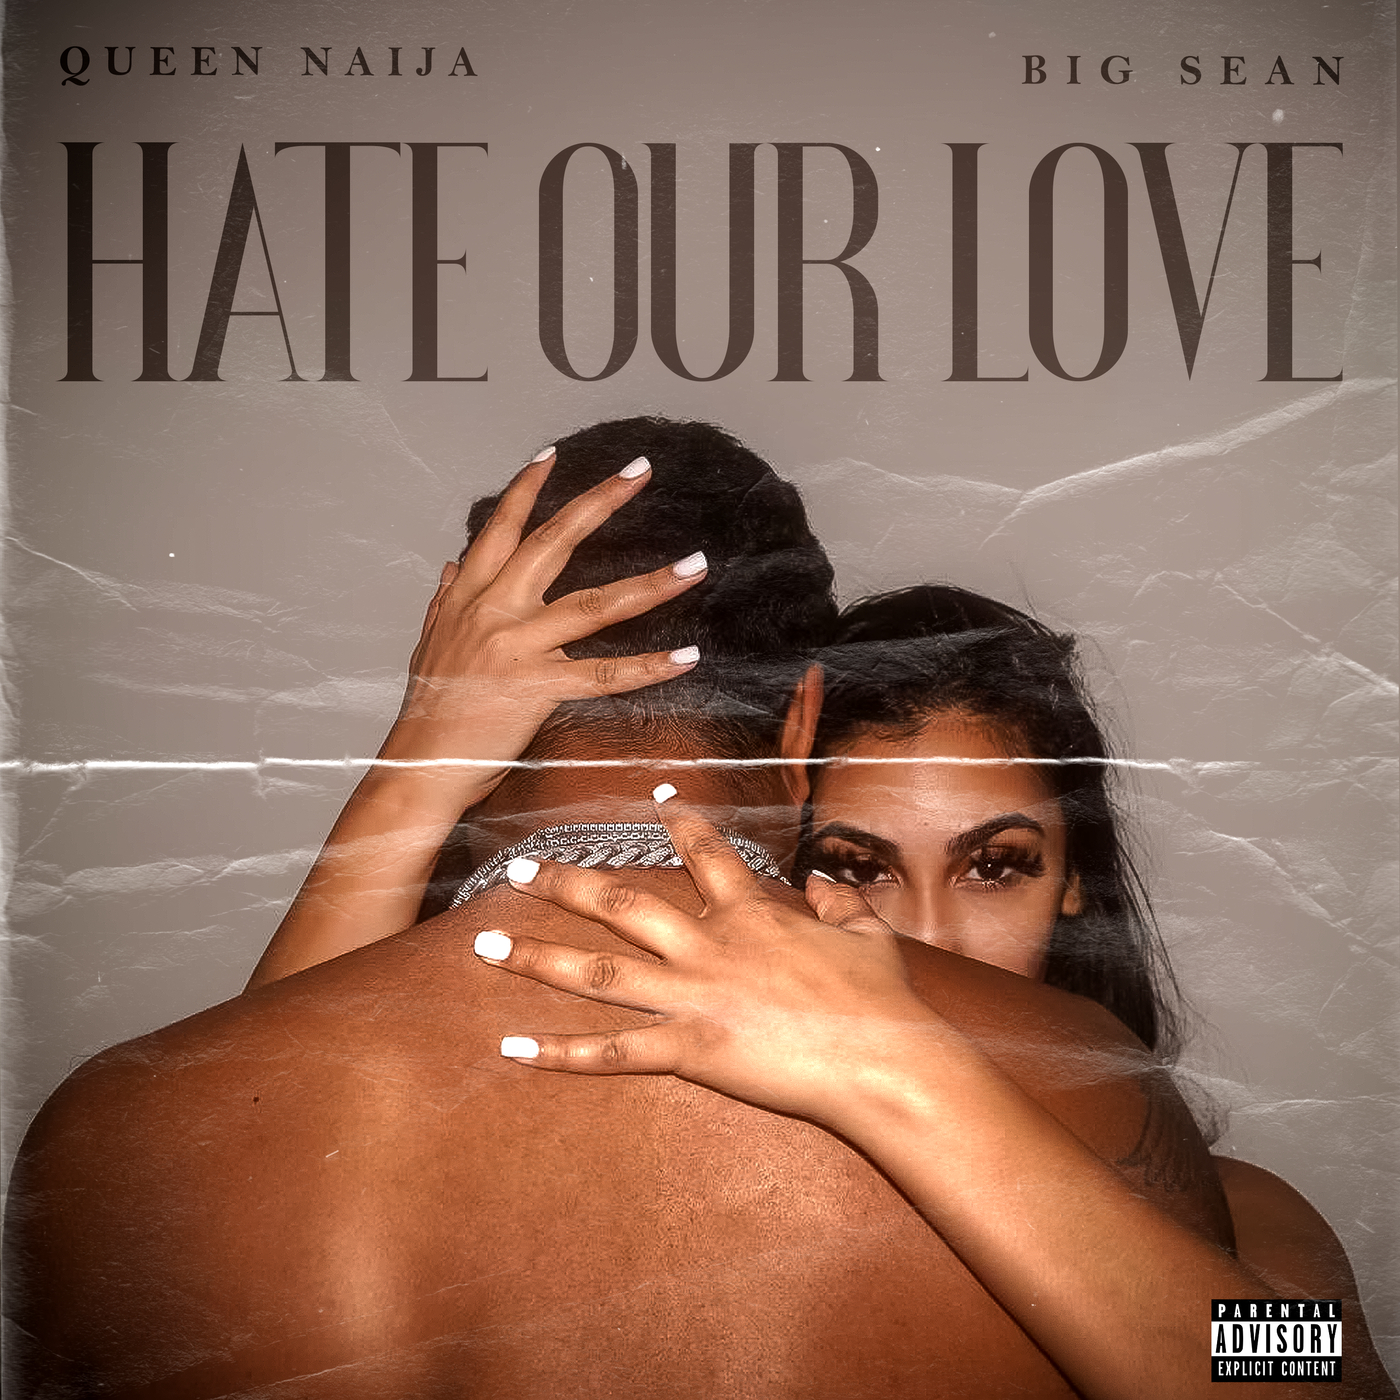 ဒေါင်းလုပ် Queen Naija, Big Sean - Hate Our Love